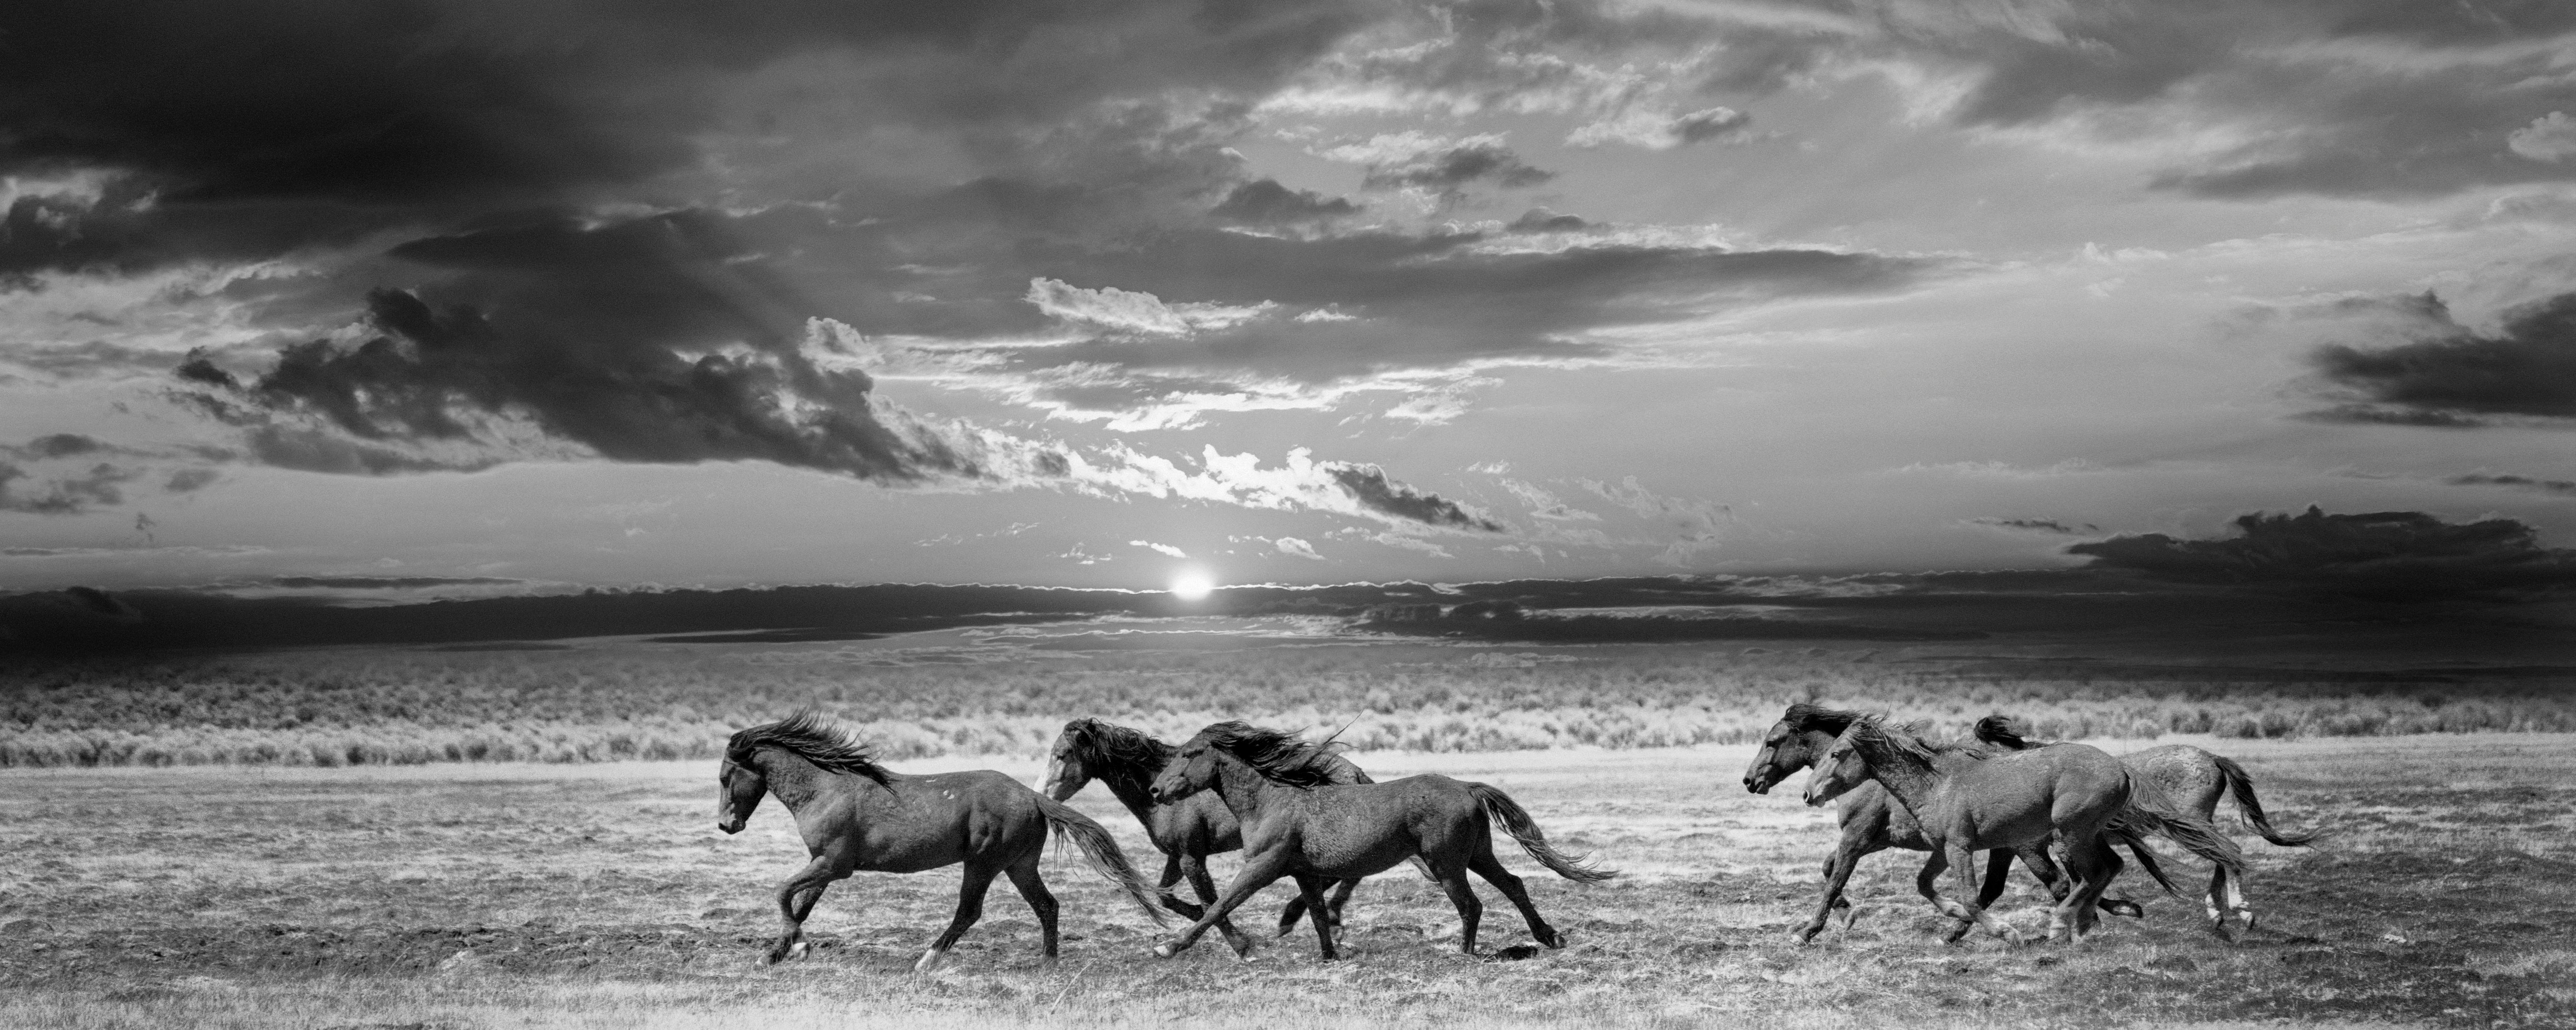 Landscape Photograph Shane Russeck - Chasser la lumière  Photographie 48x120 B&W - Chevaux sauvages - Mustangs